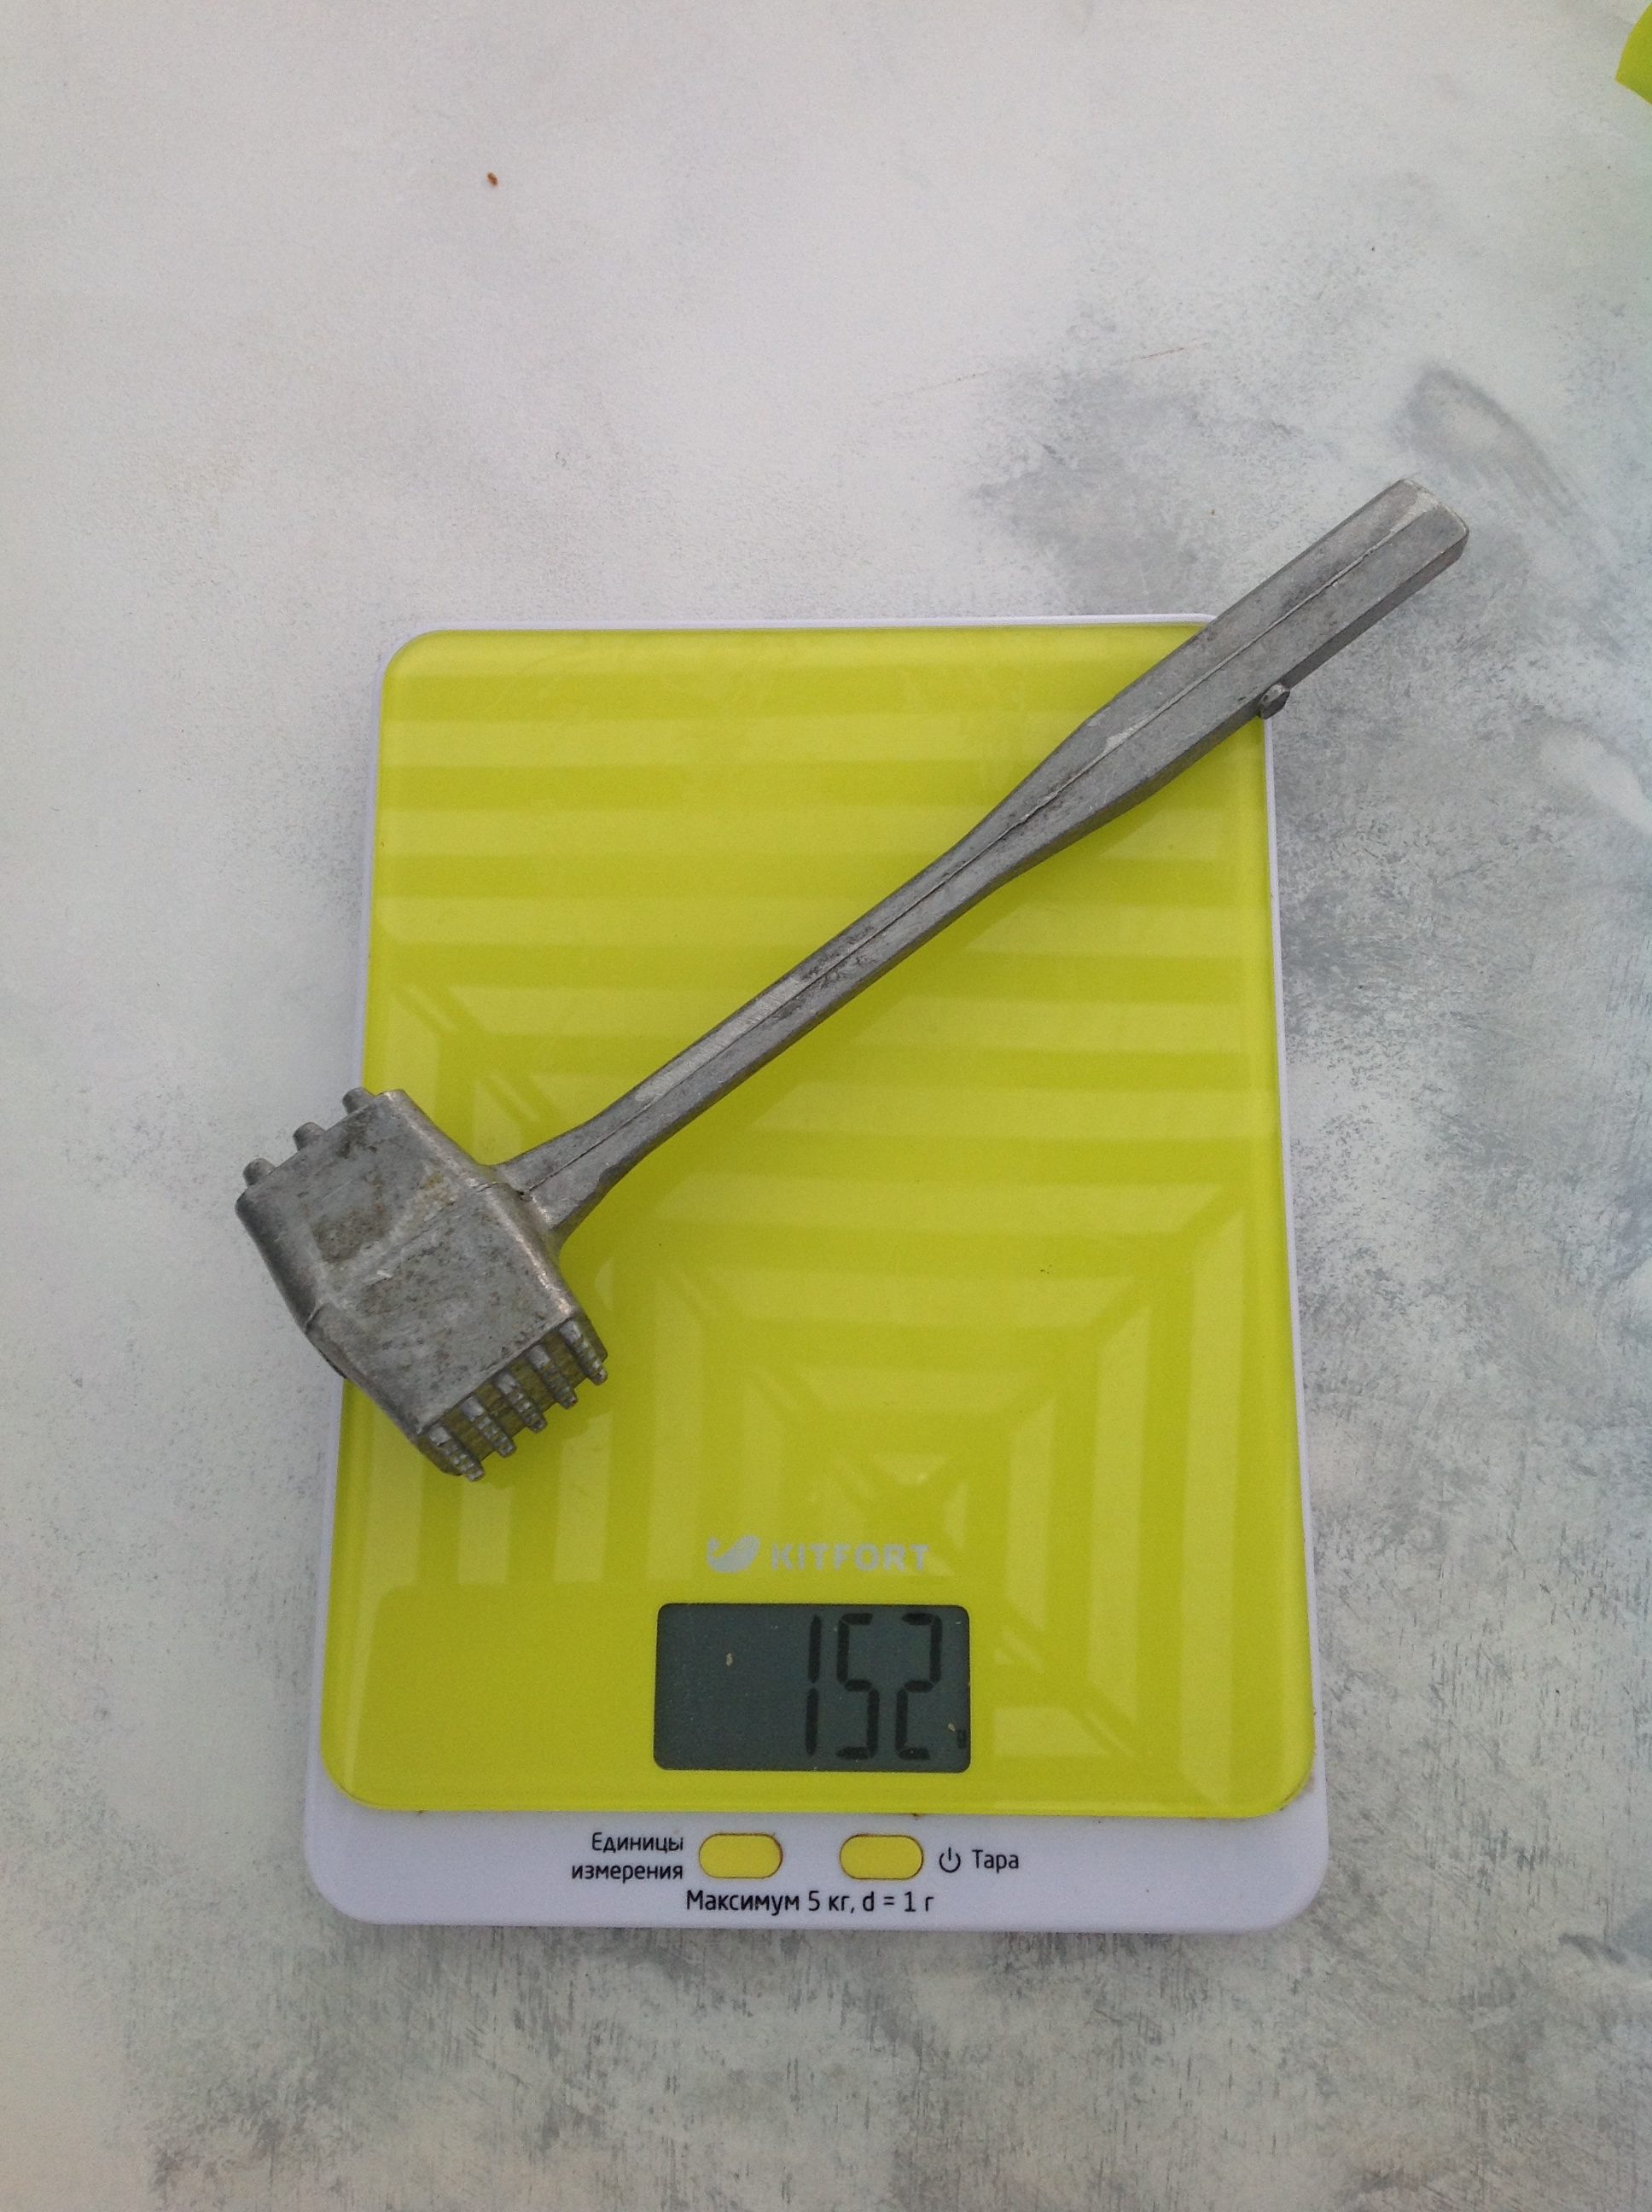 вес алюминиевого молотка для отбивания мяса